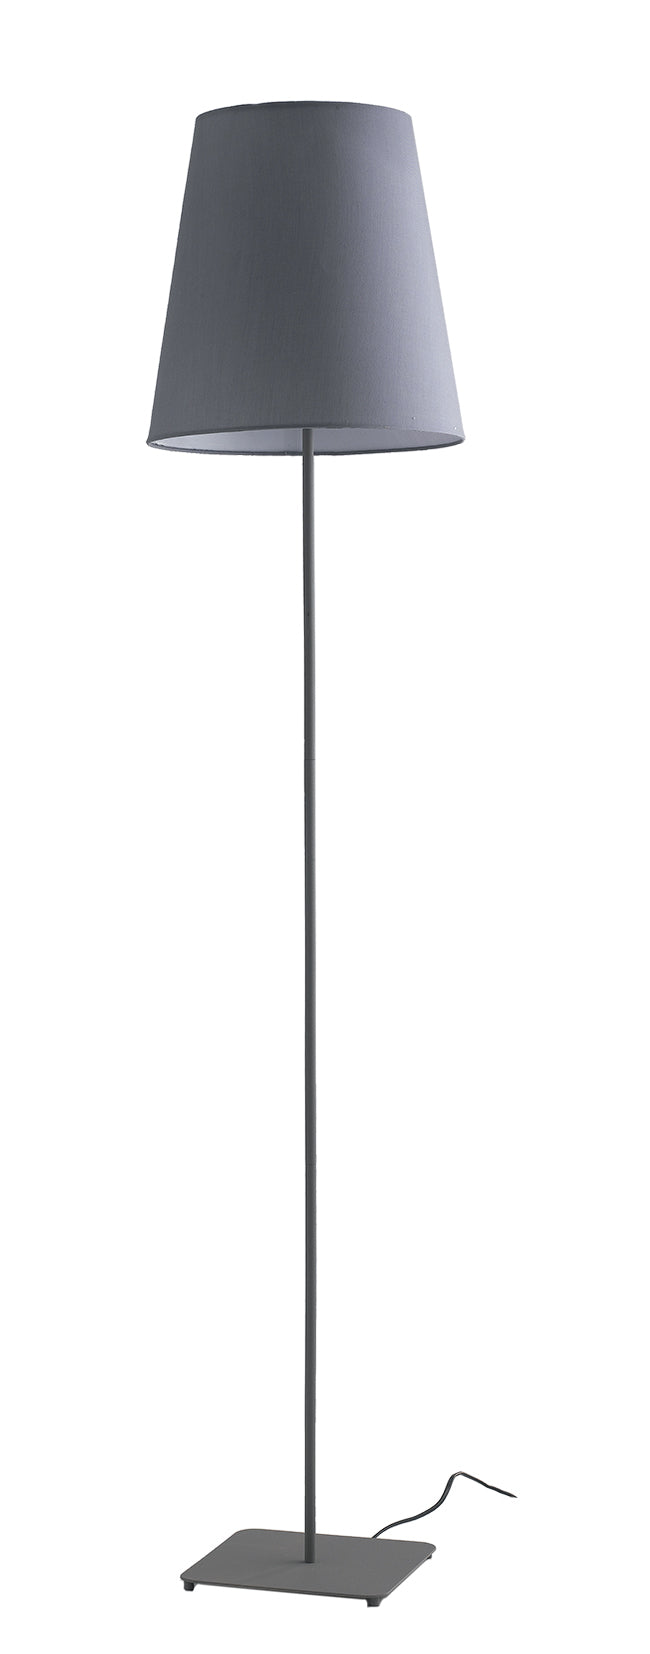 piantana elvis grigia 1xe27 34x155cm